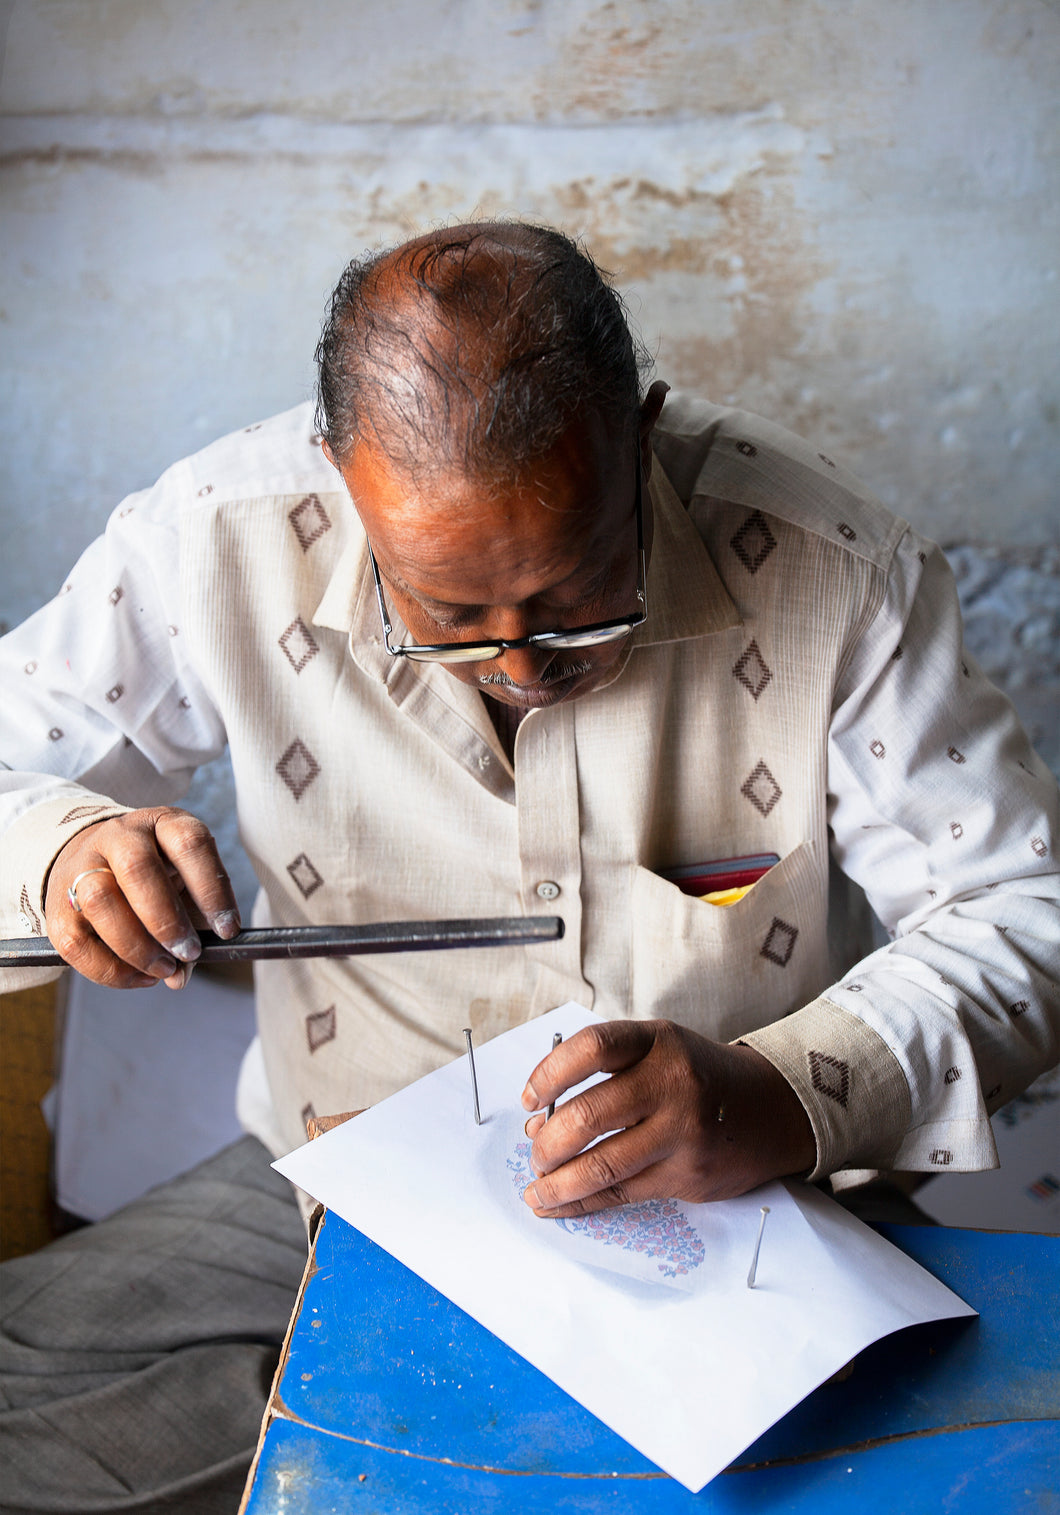 Hantverk och tradition vid tillverkning av stämplar till våra handtryckta textilier